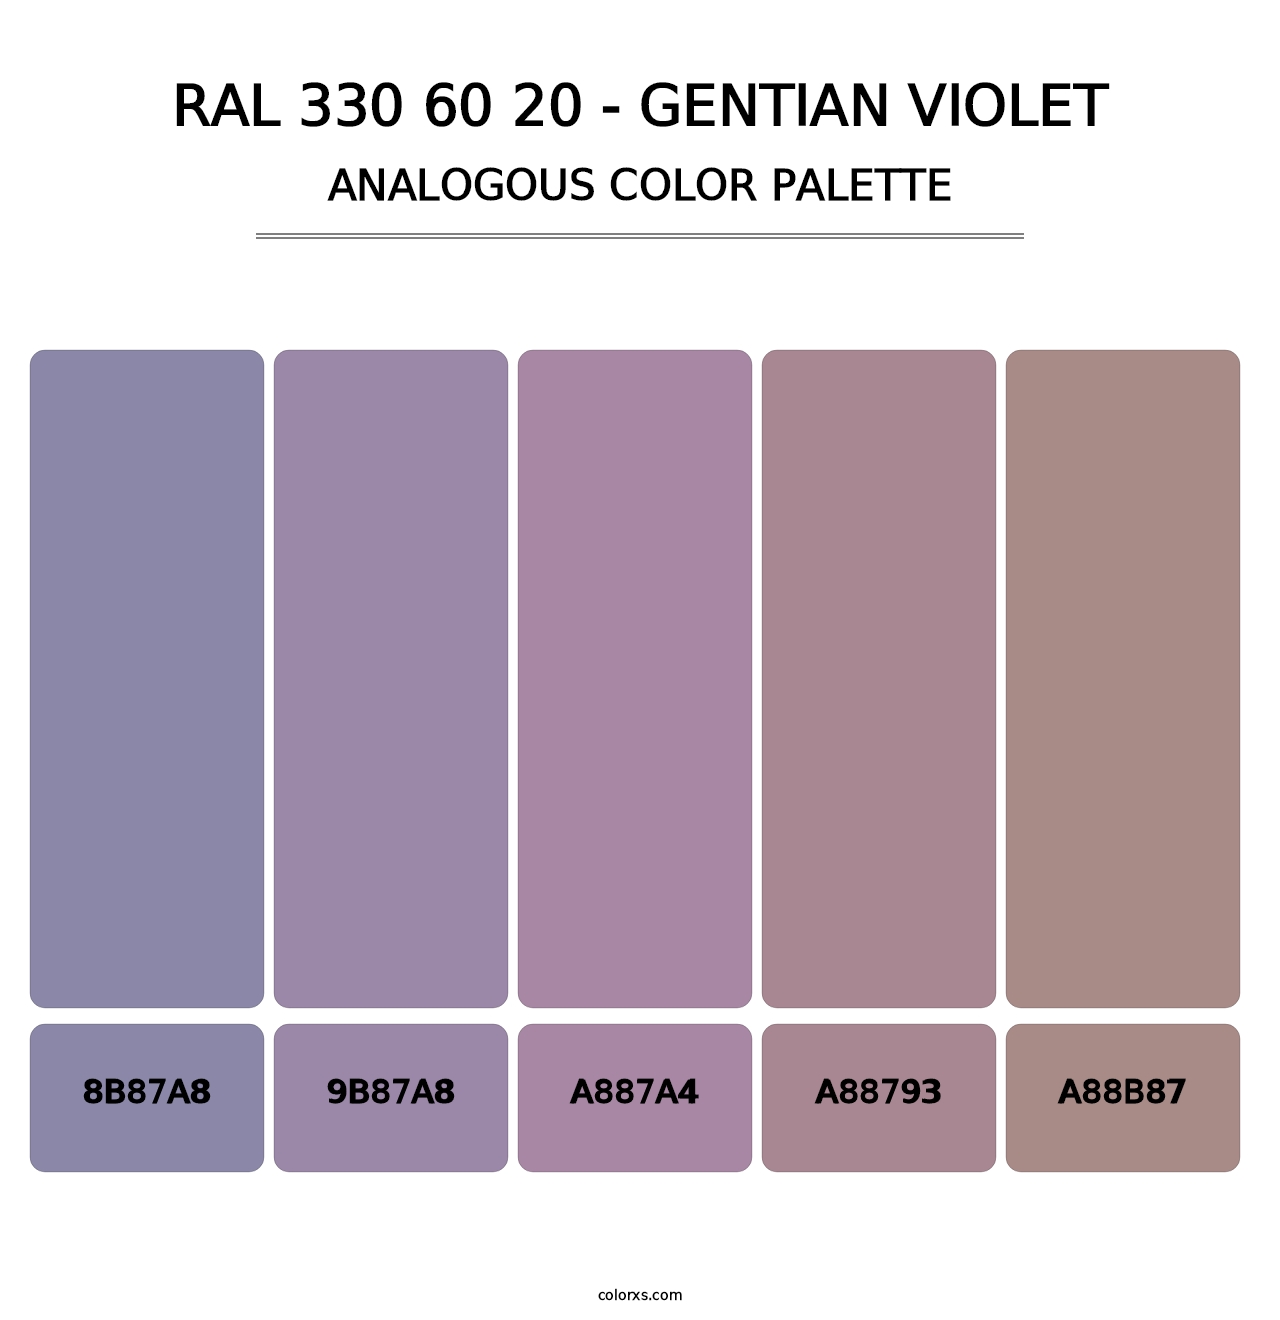 RAL 330 60 20 - Gentian Violet - Analogous Color Palette